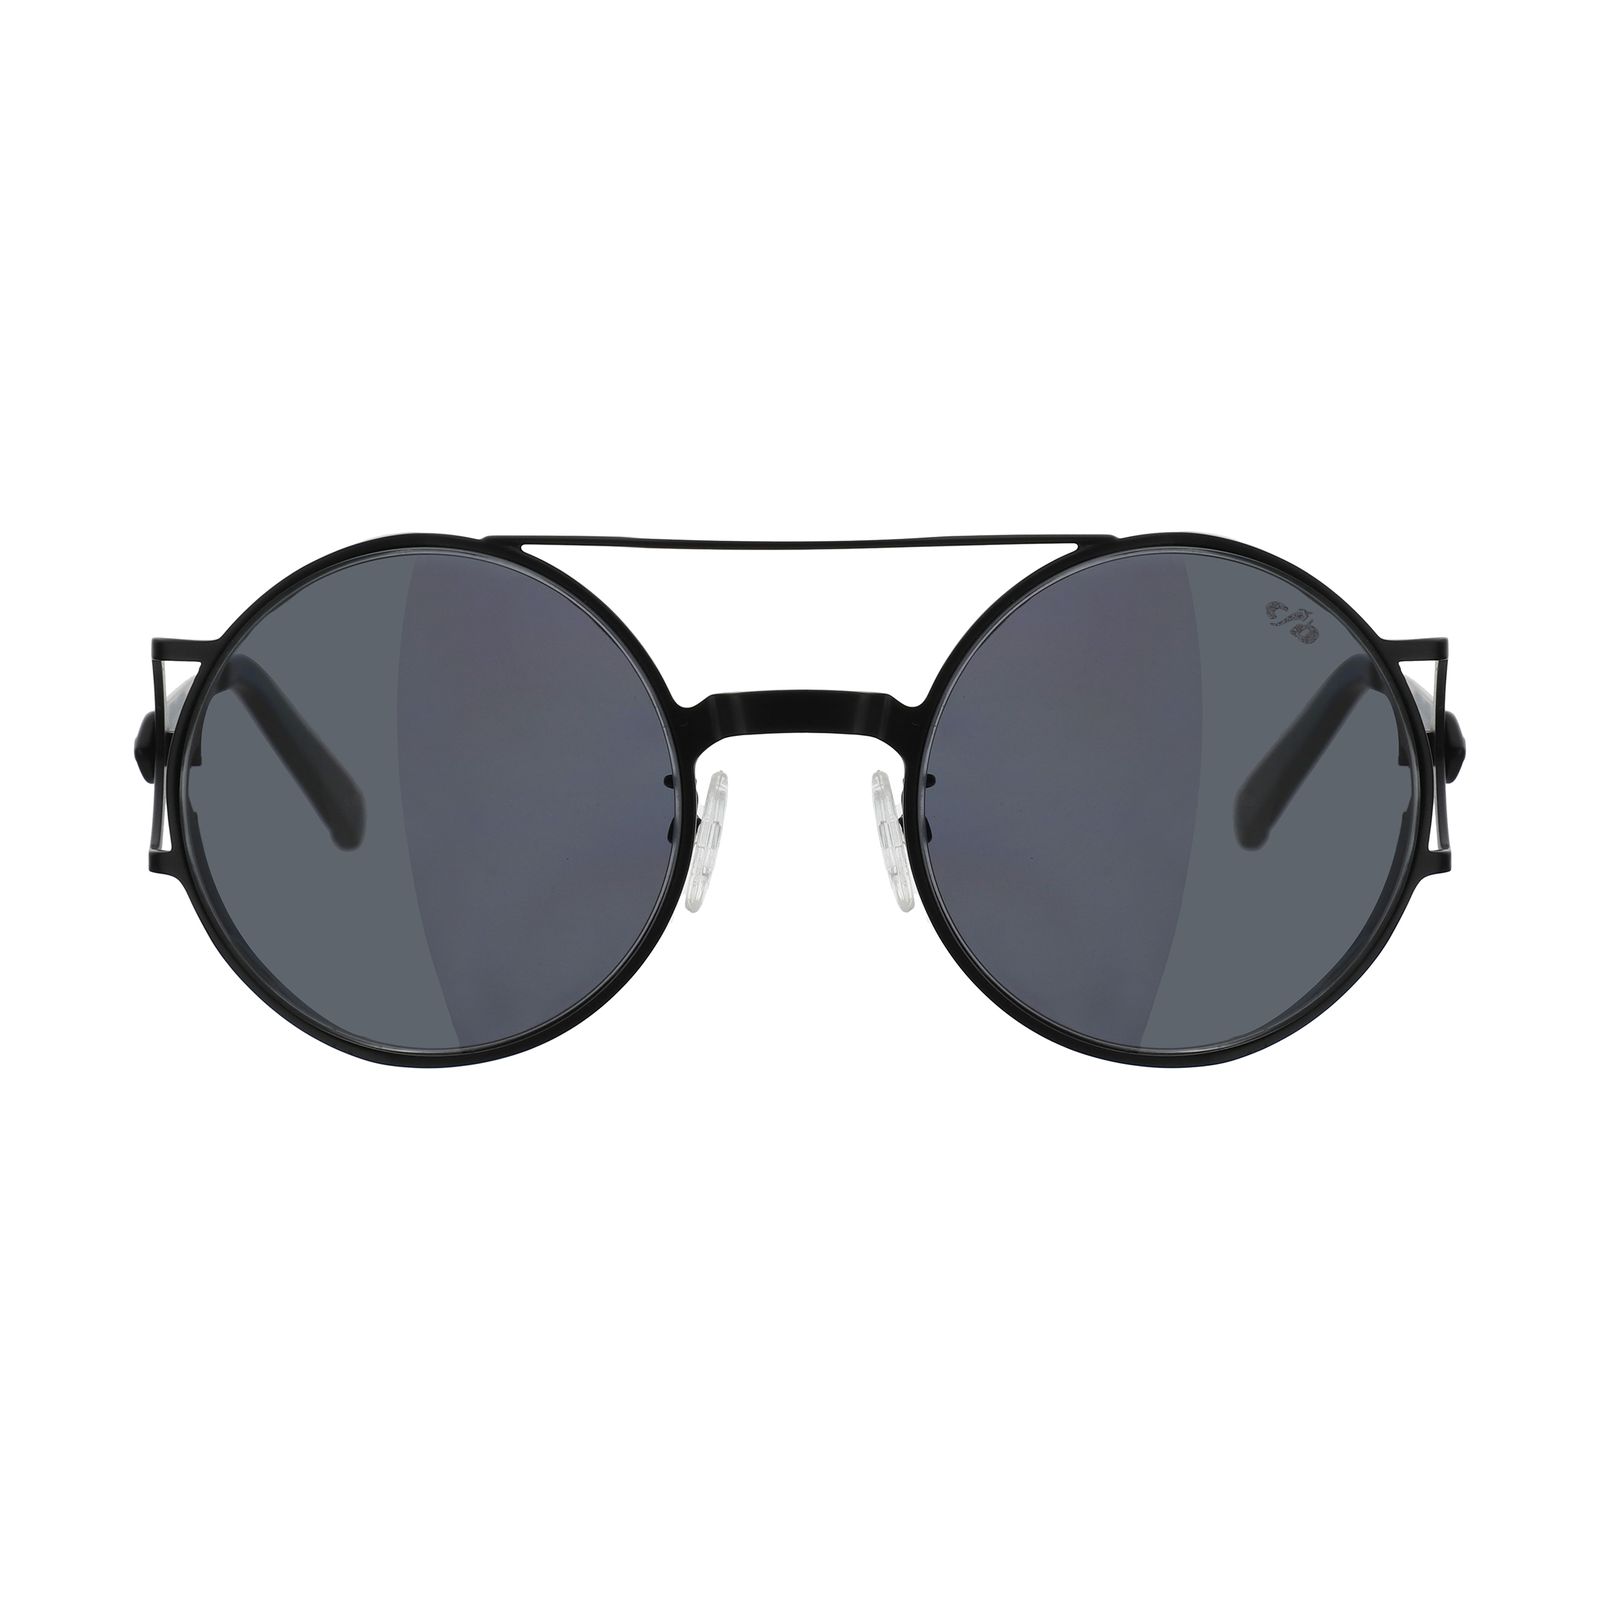 عینک آفتابی چیلی بینز مدل 2295 0101 -  - 1